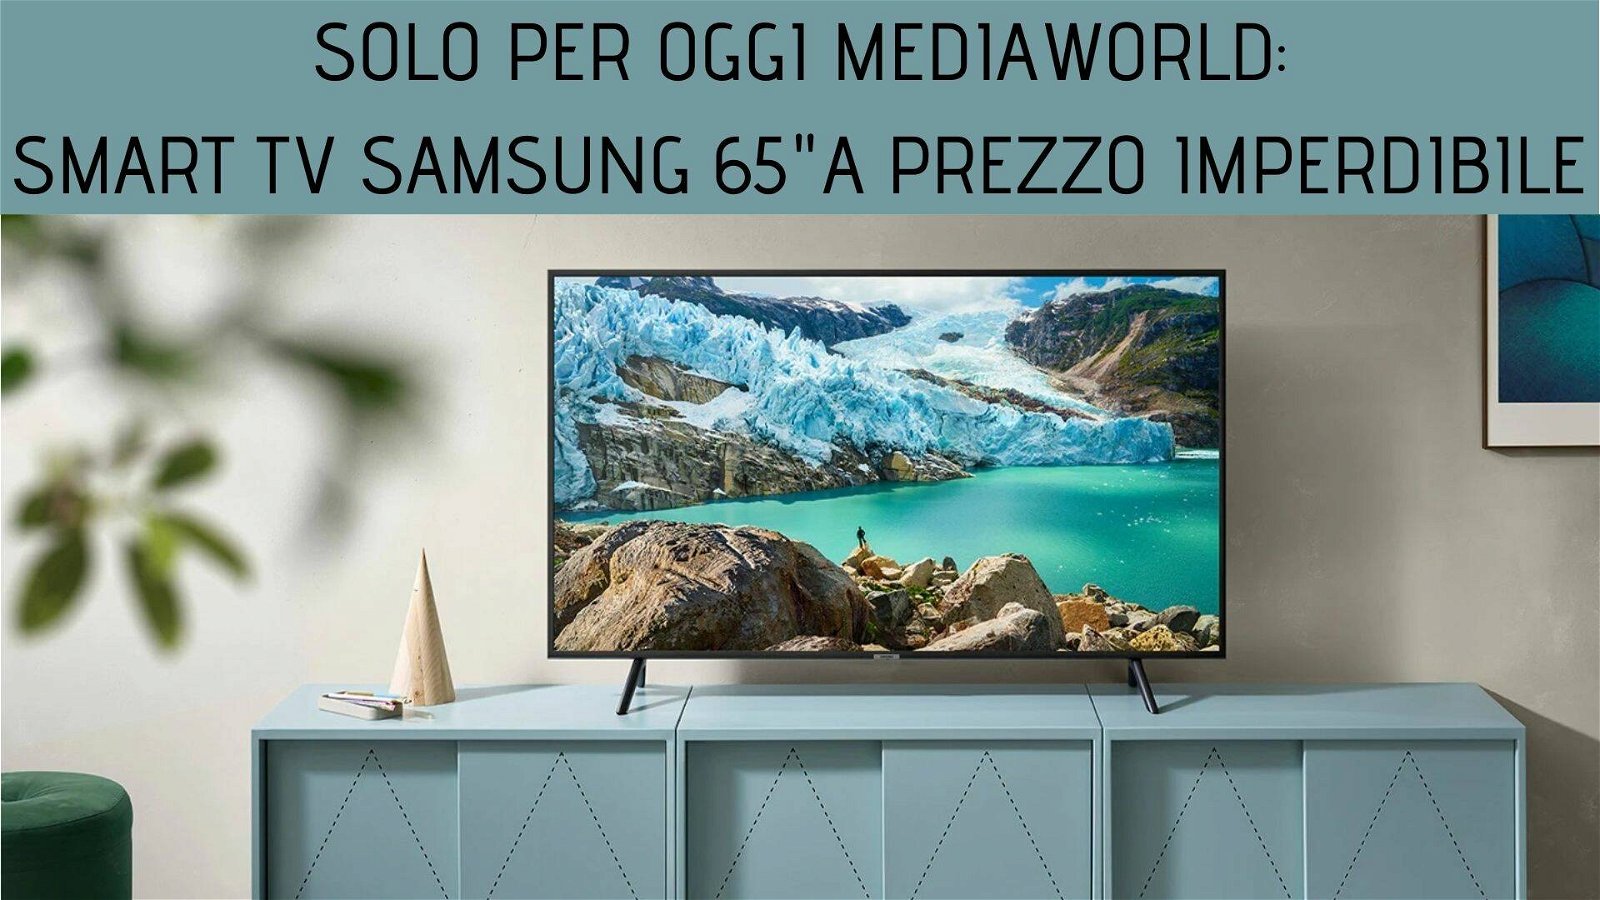 Immagine di Smart TV Samsung da 65 polllici a prezzo imbattibile nel Solo per oggi Mediaworld